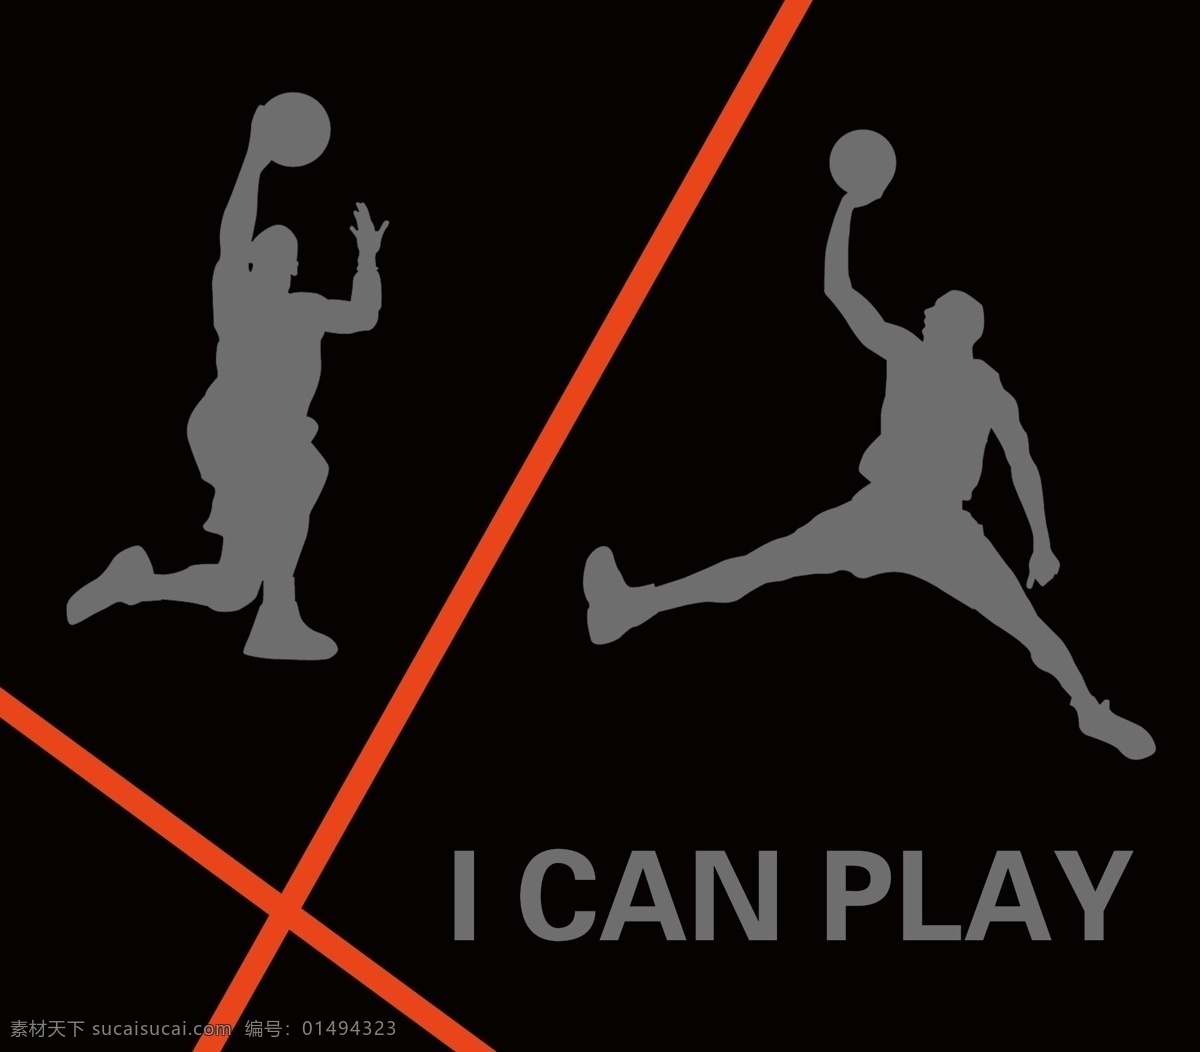 投篮姿势 投篮 姿势 体育 篮球 运动 文化艺术 体育运动